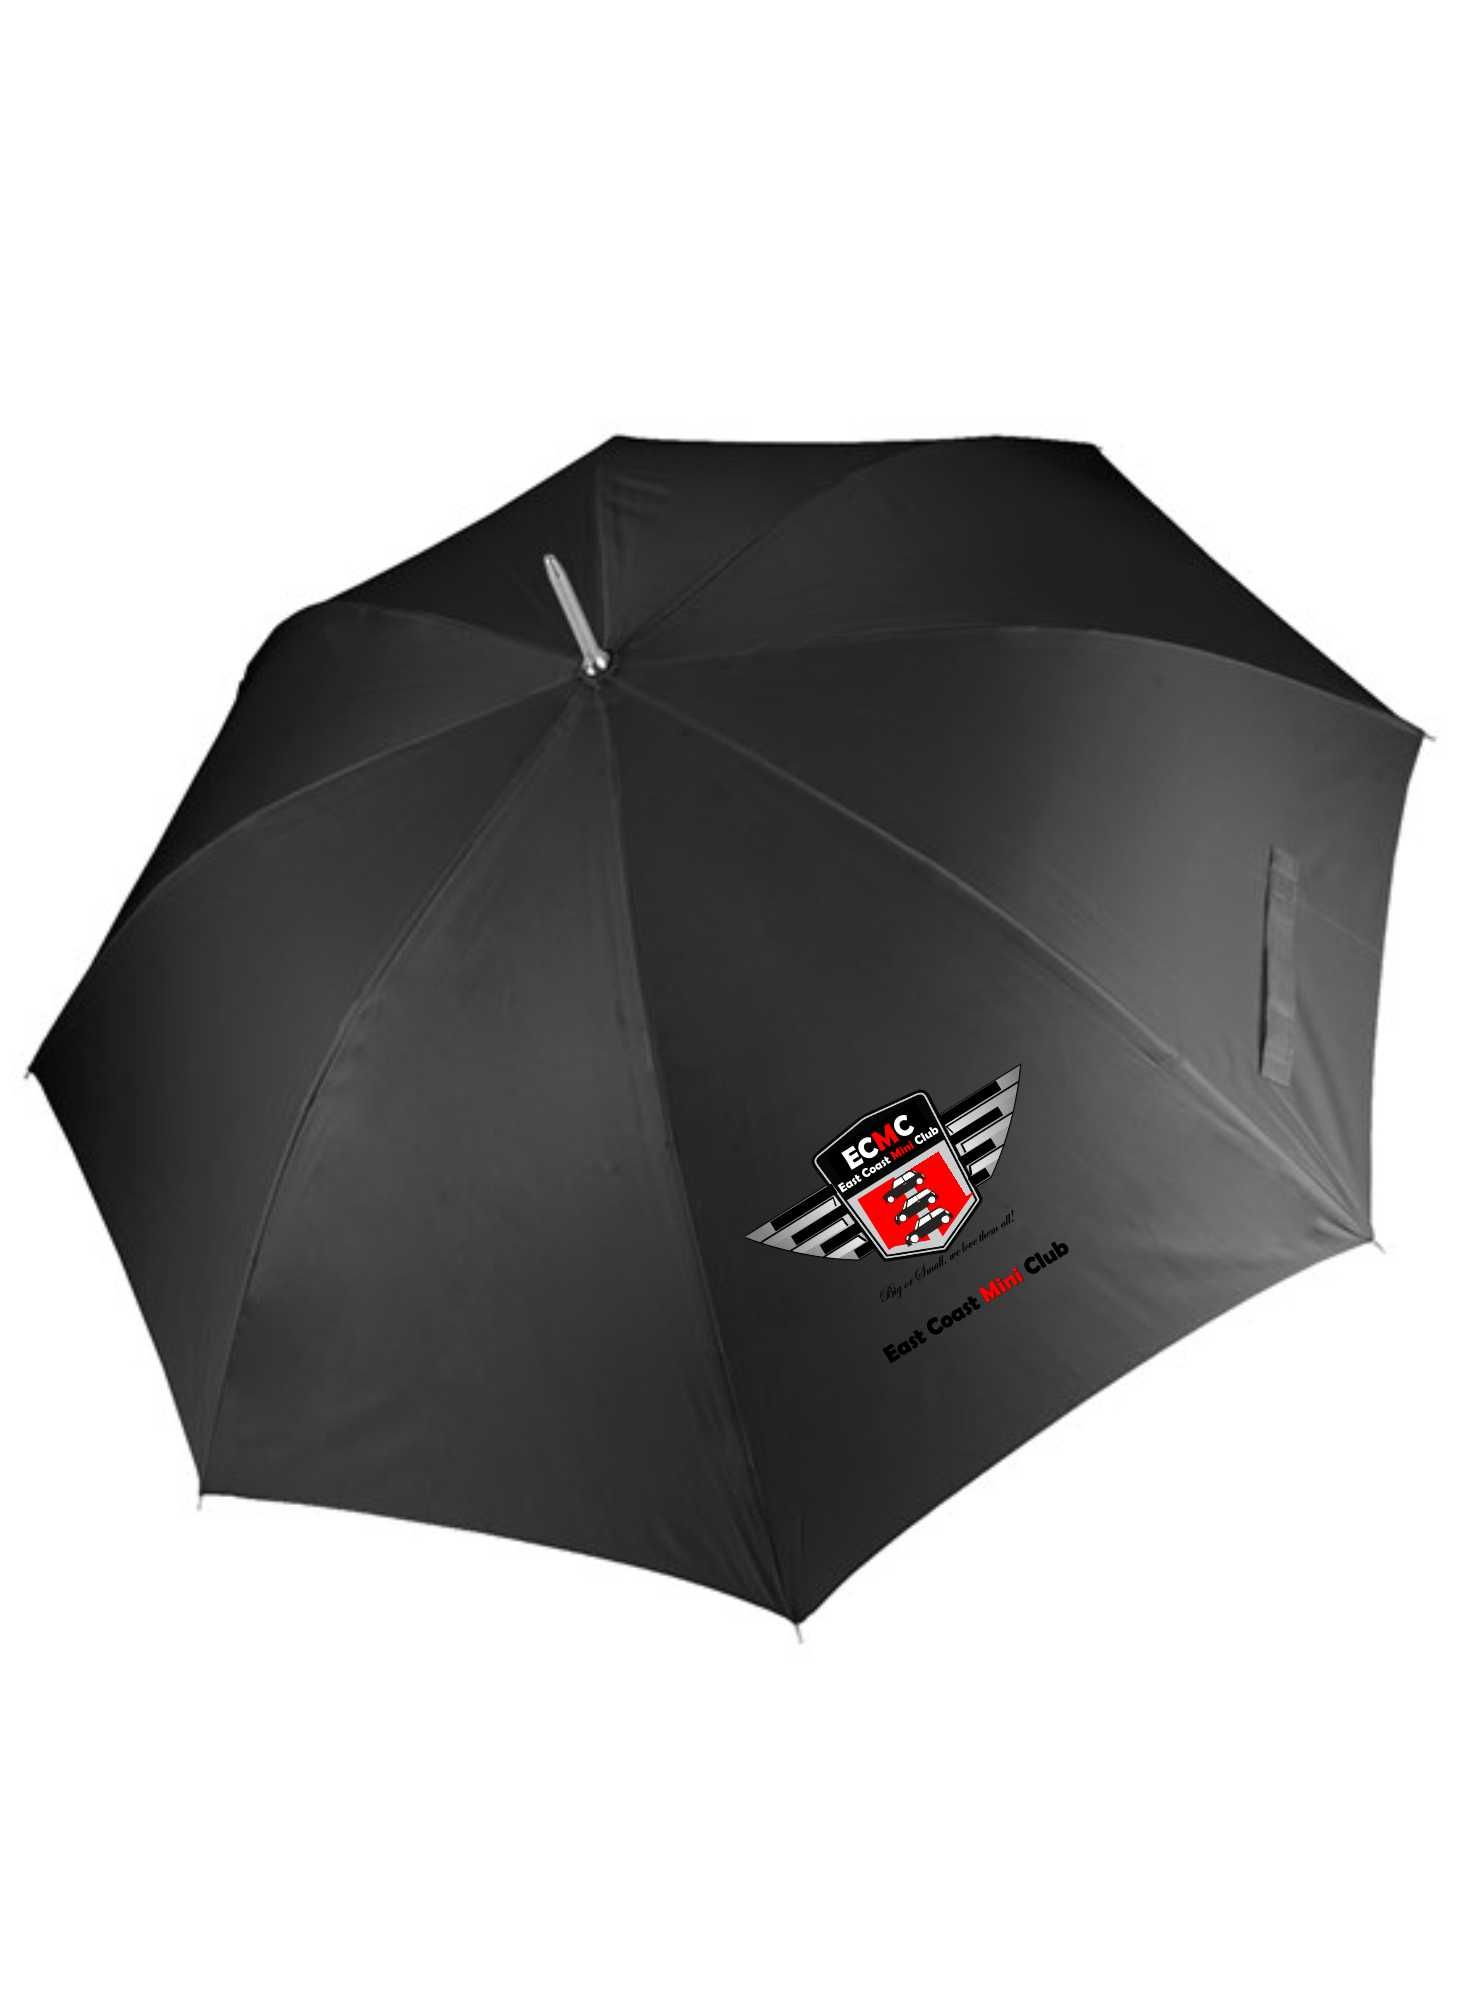 East Coast Mini Club – Umbrella